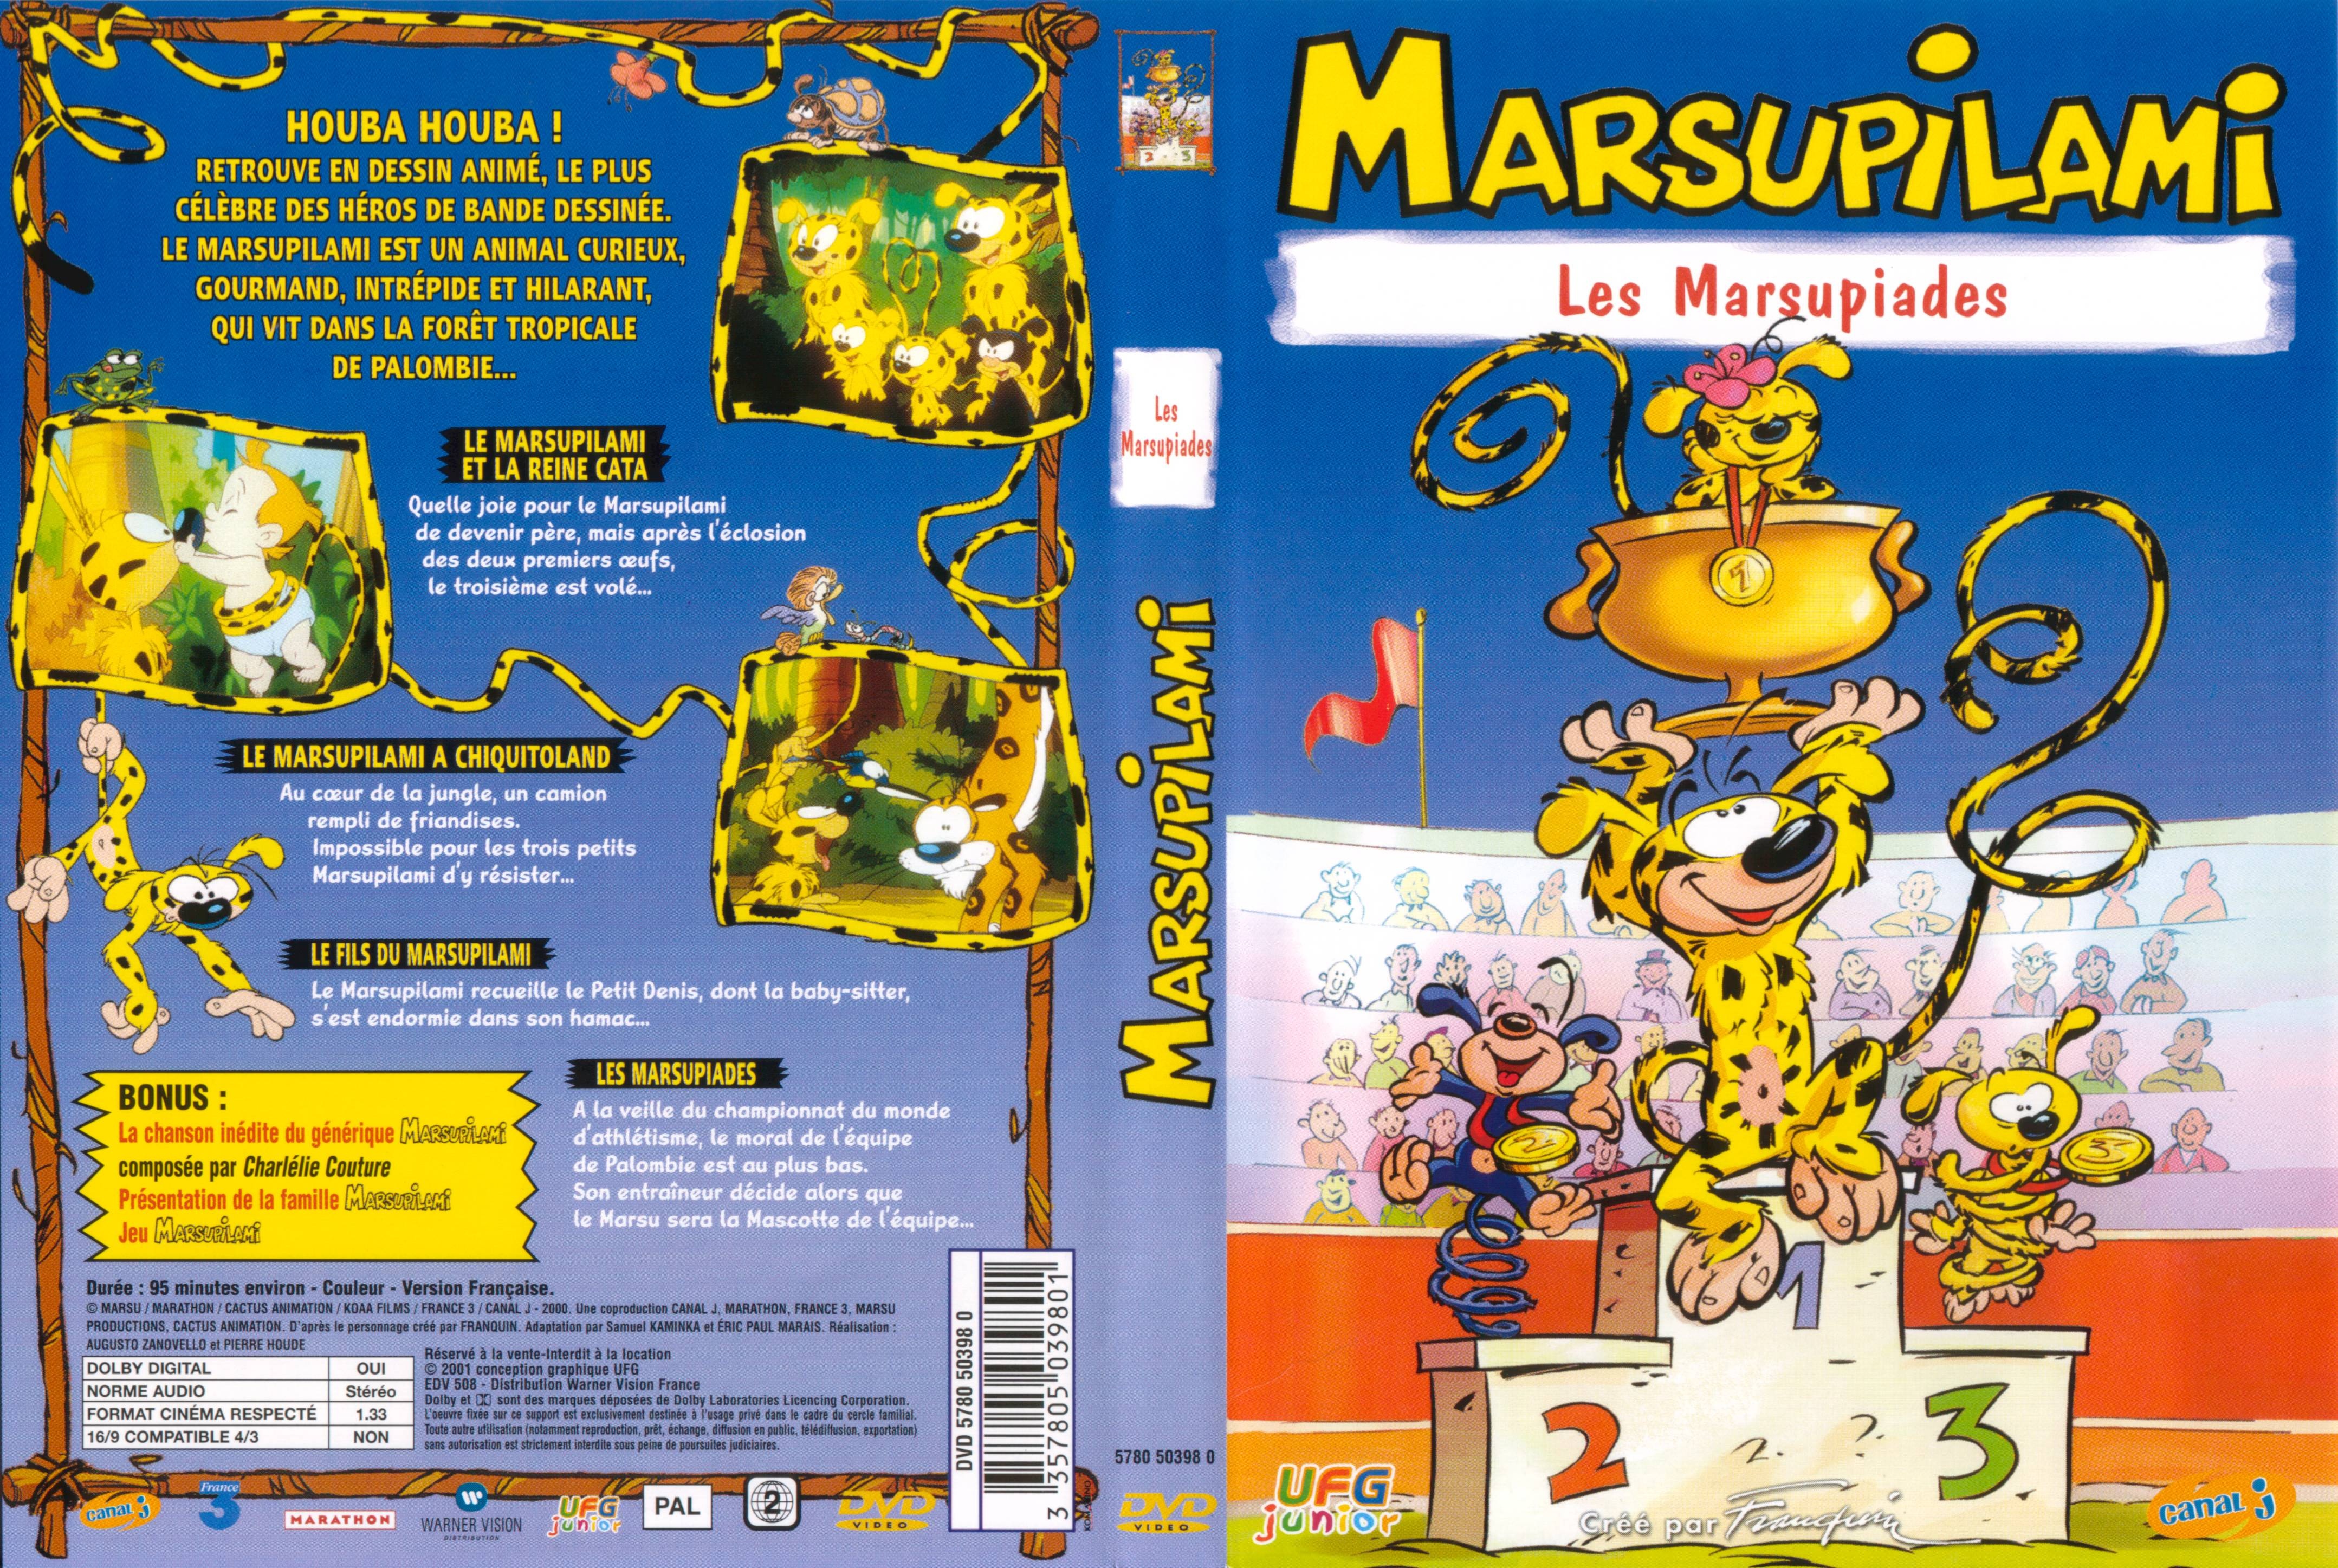 Jaquette DVD Marsupilami - Les Marsupiades